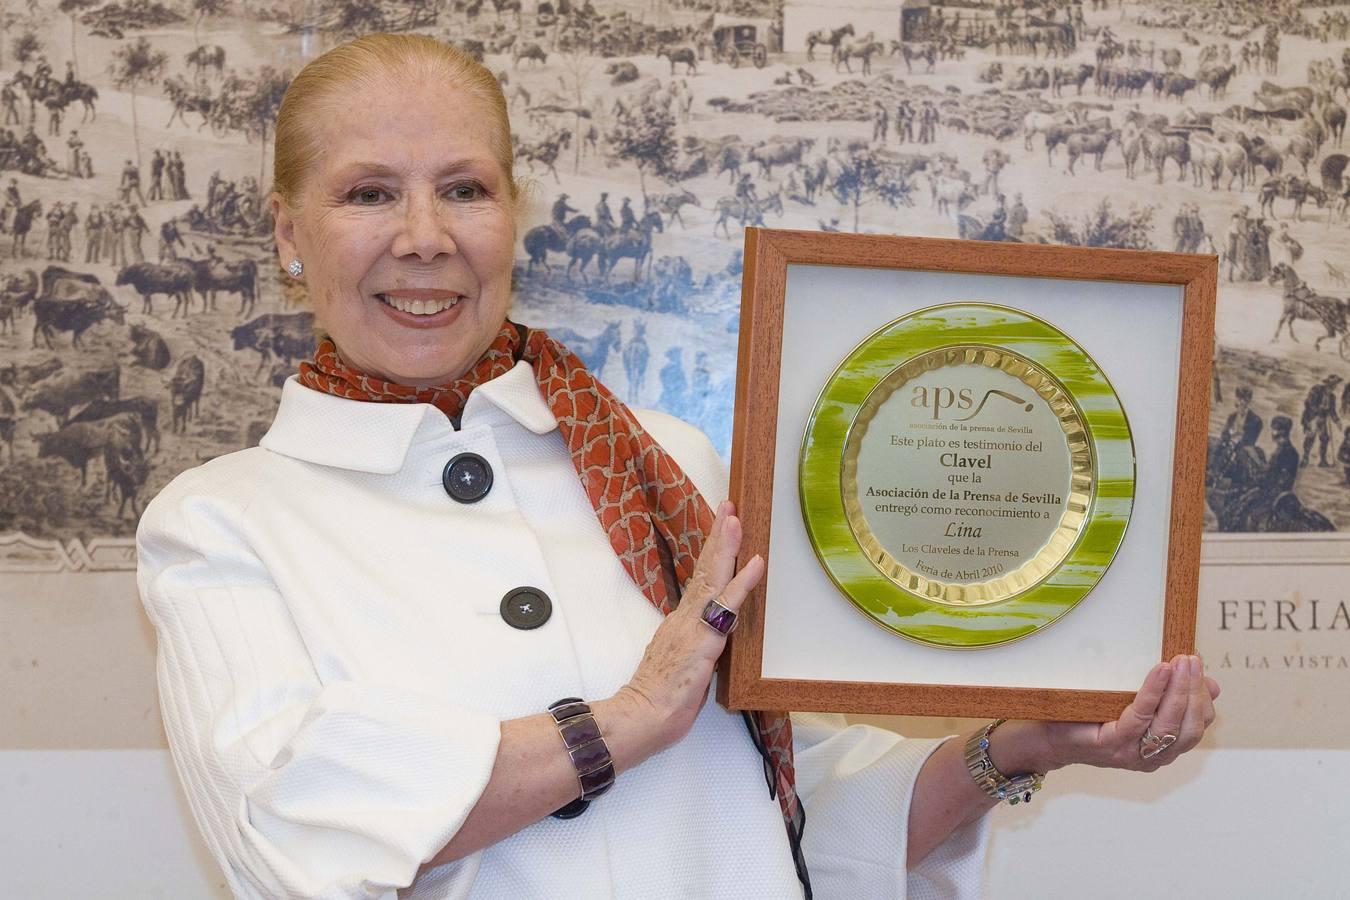 Lina recibió el Premio Clavel de la Asociaión de la Prensa de Sevilla